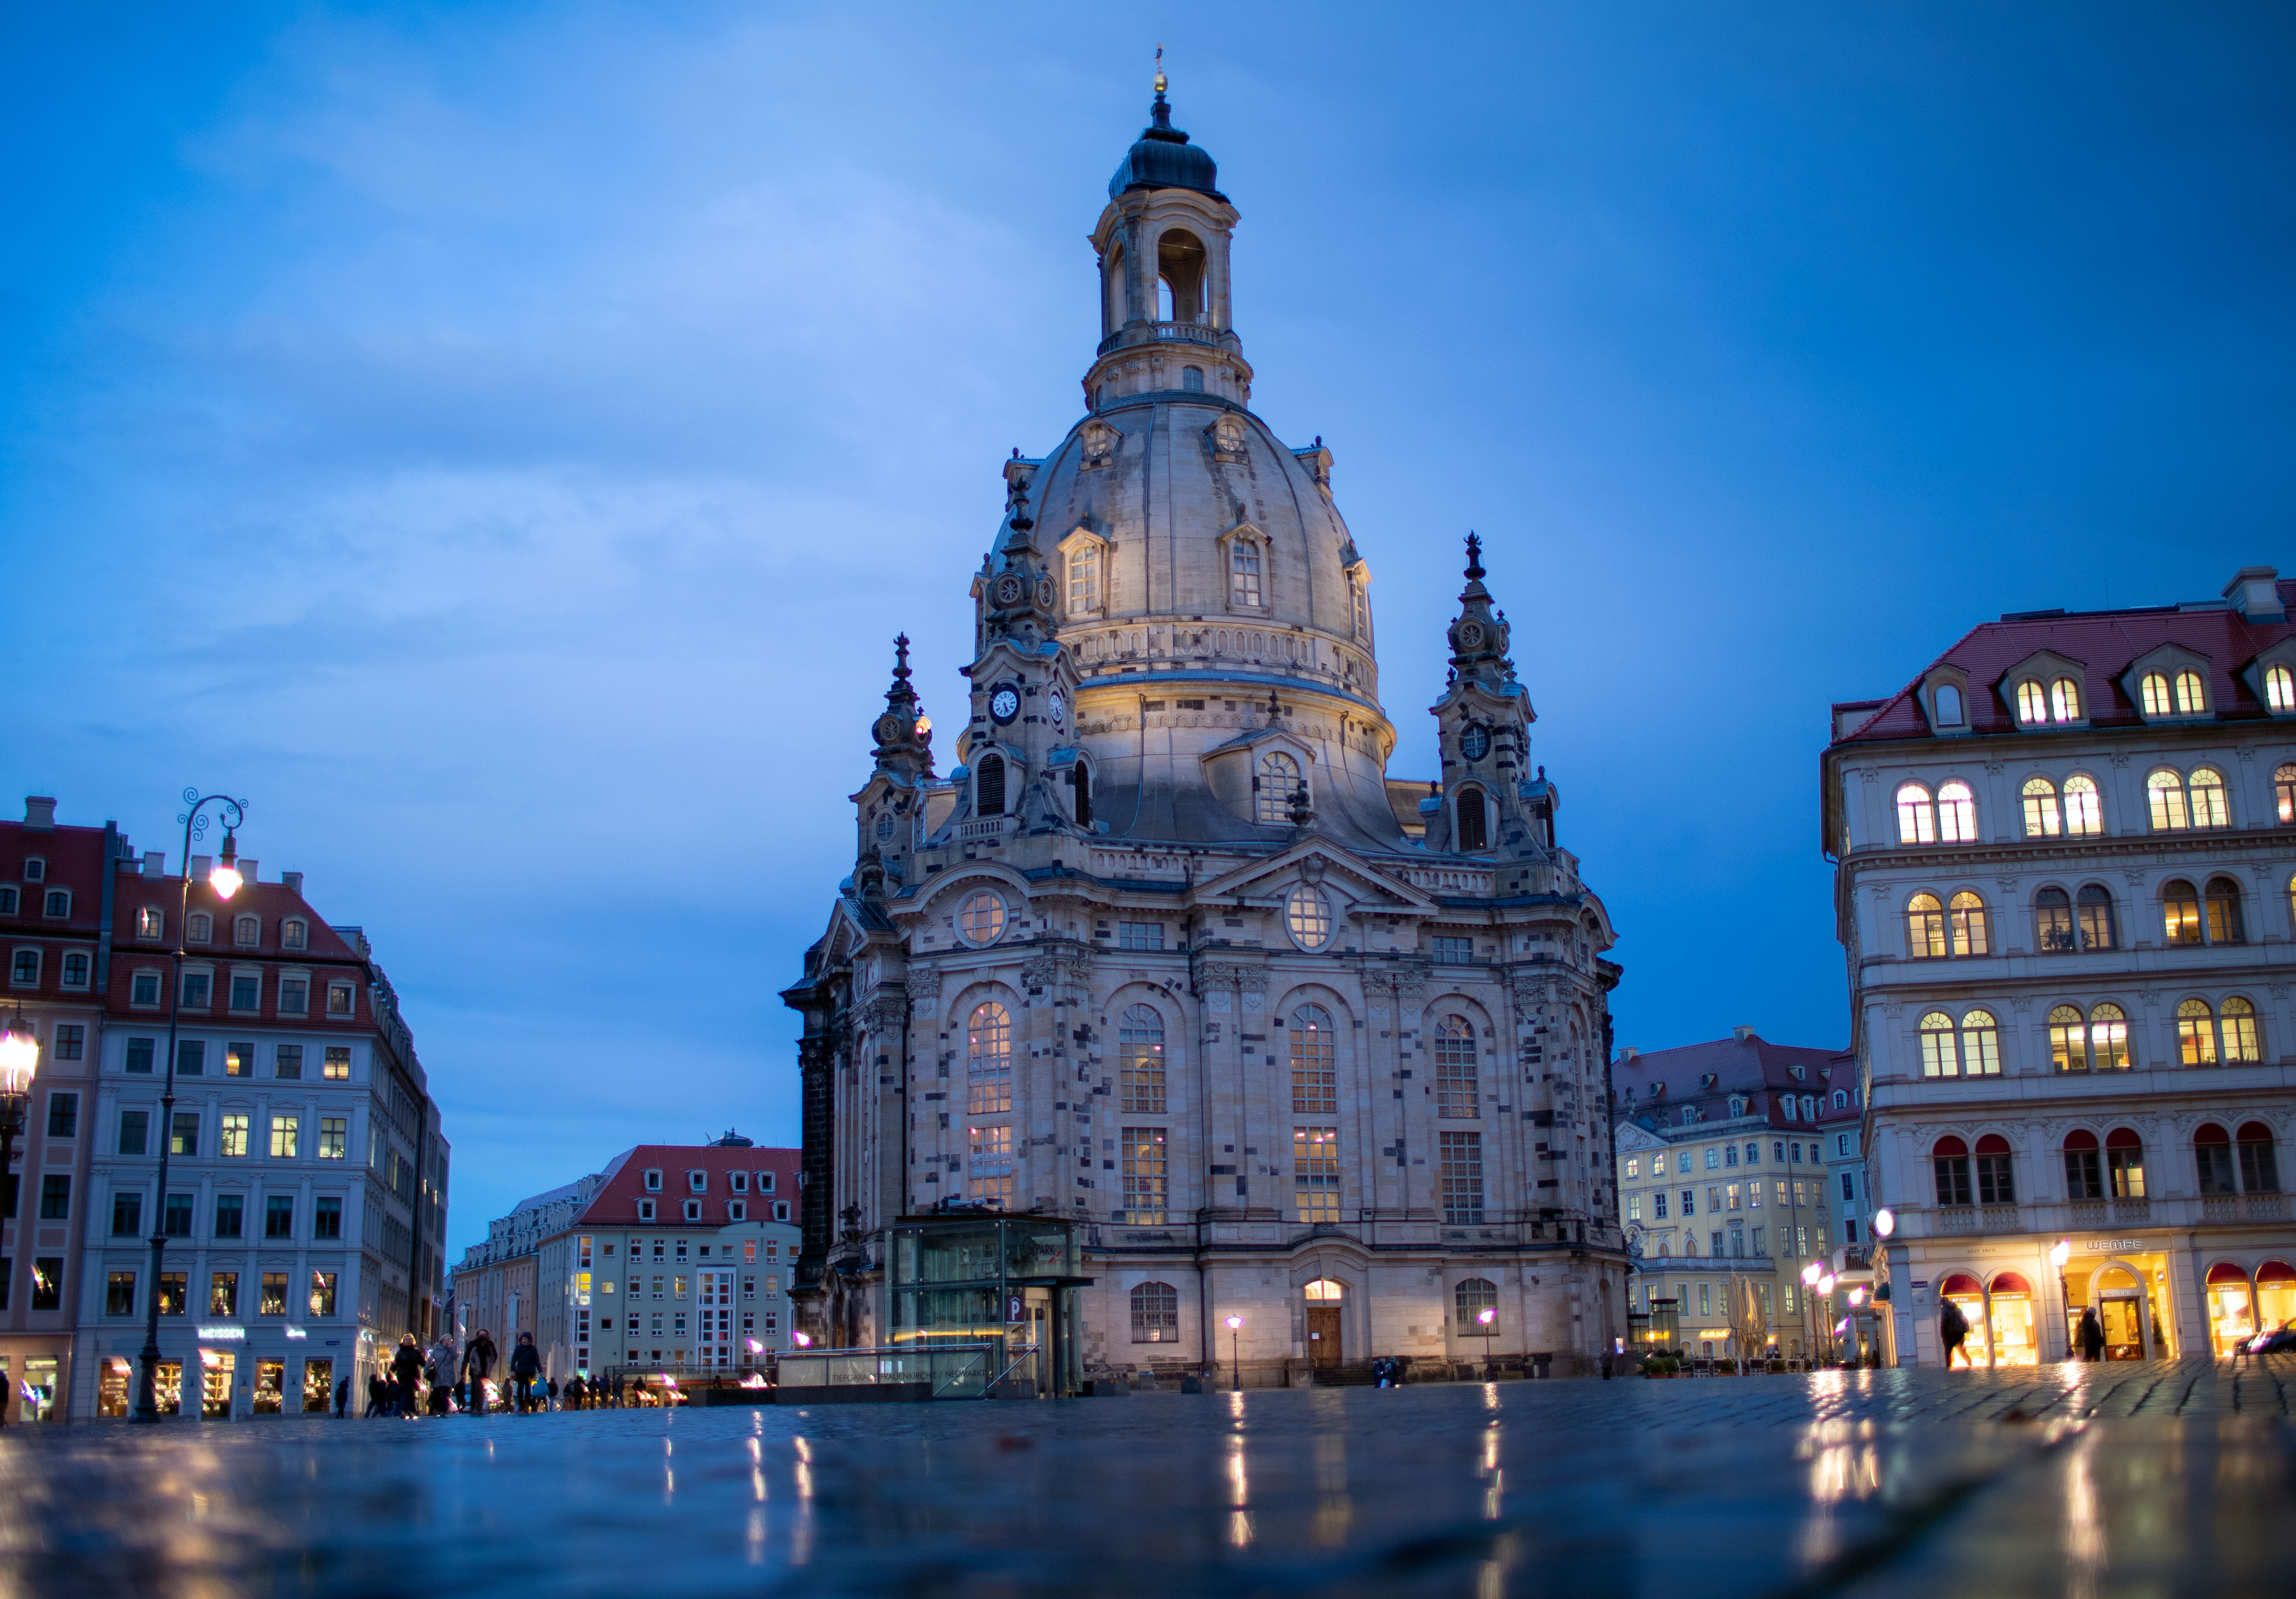 Foto: Frauenkirche Dresden